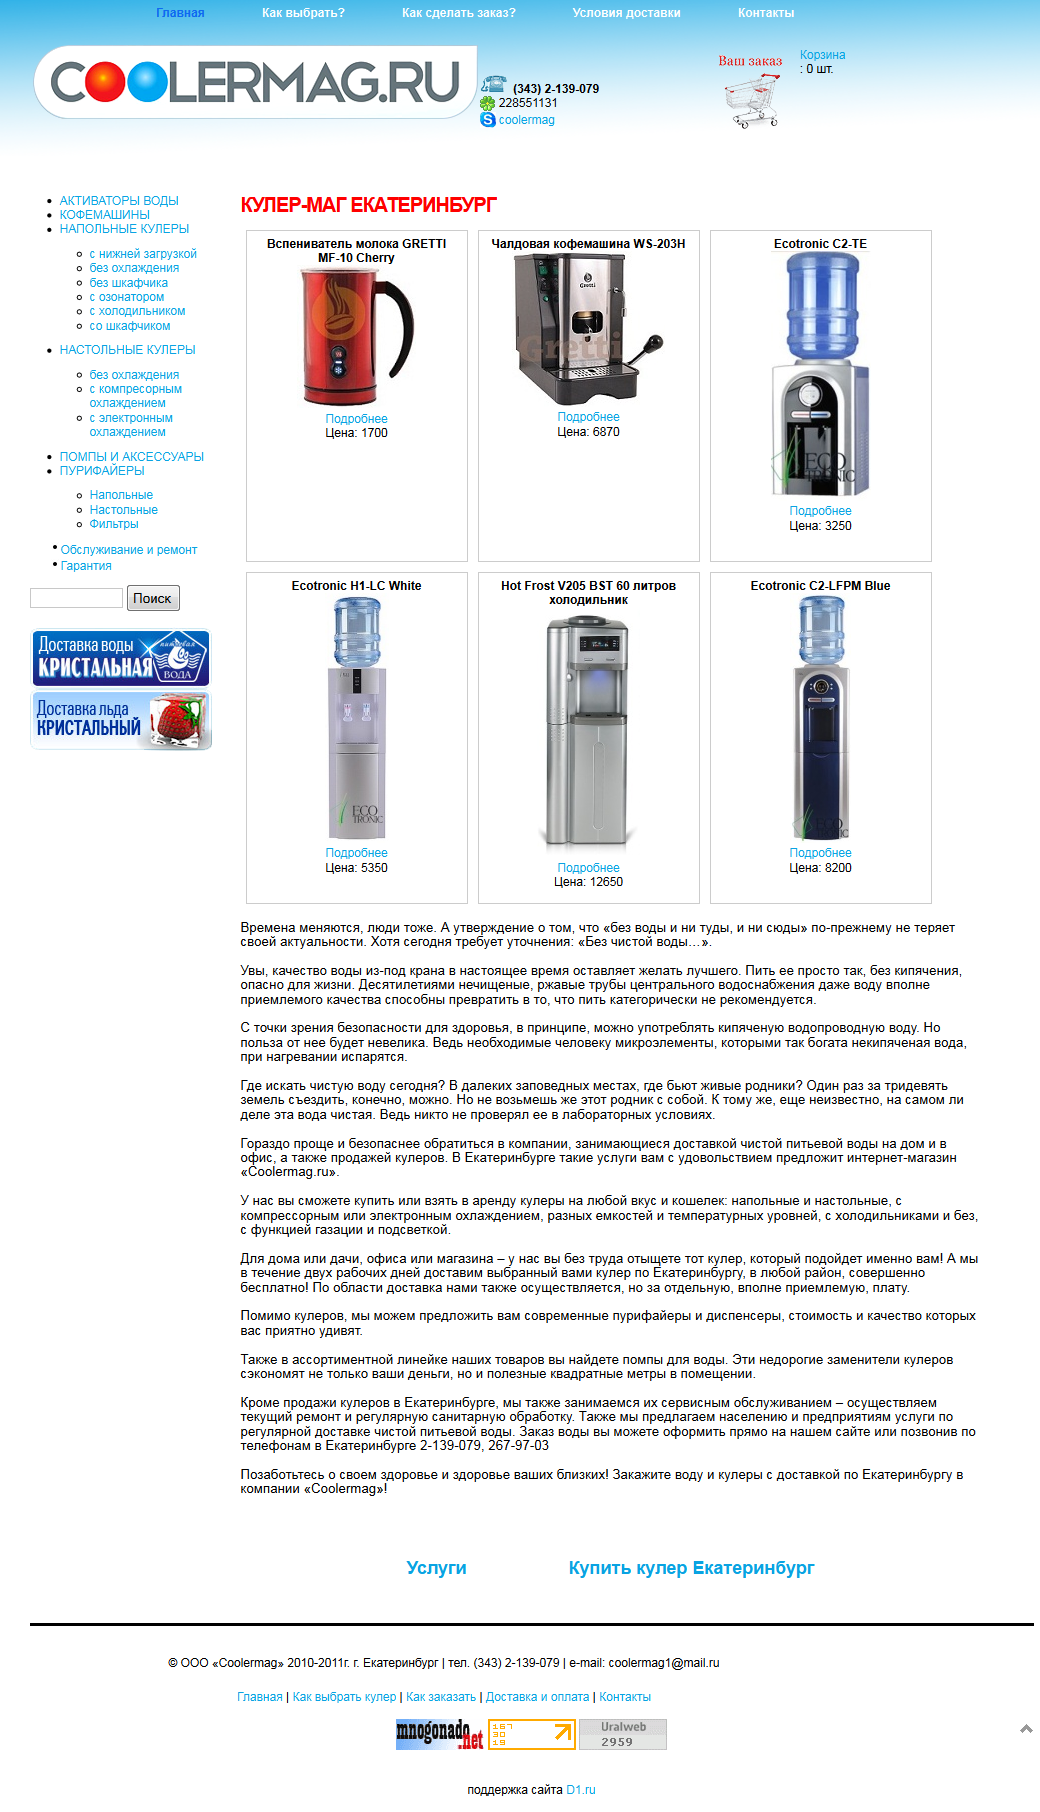 Продажа кулеров для воды (напольных, настольных, с холодильником) 